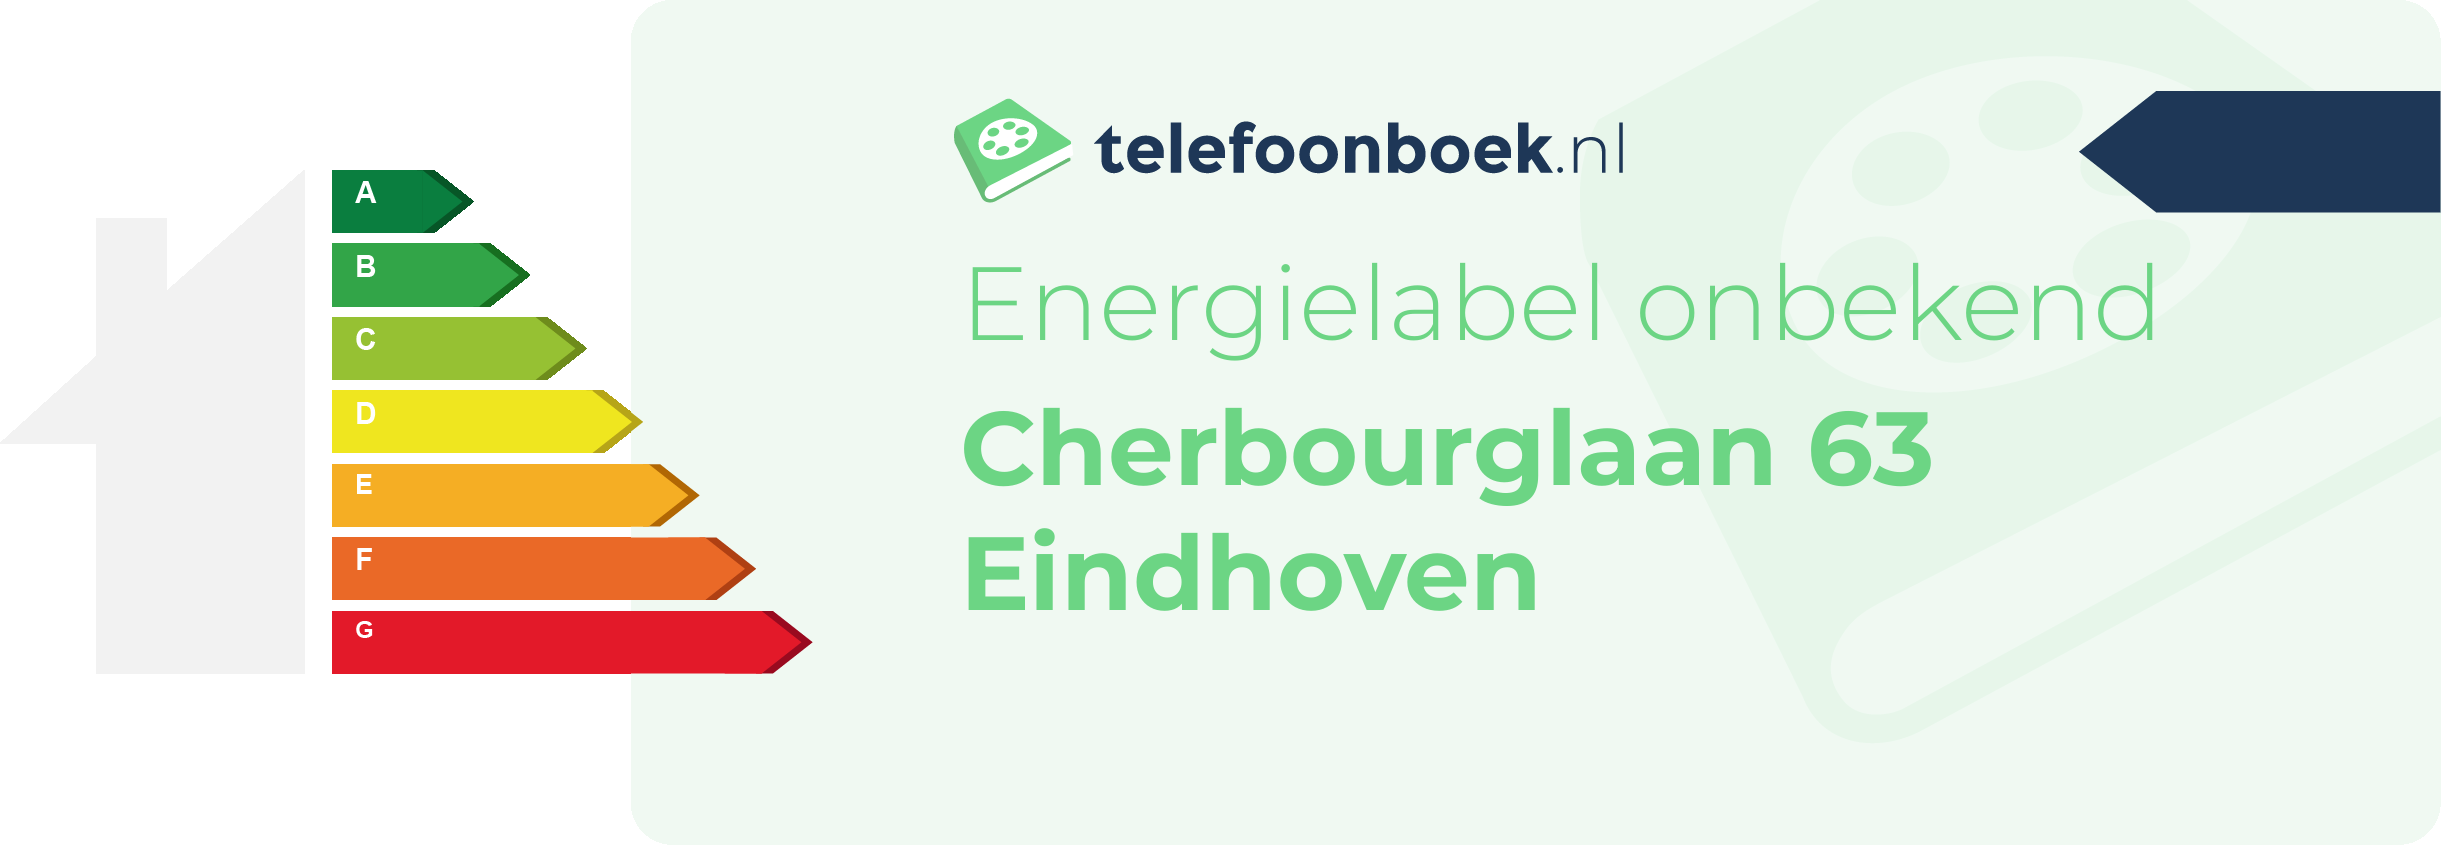 Energielabel Cherbourglaan 63 Eindhoven